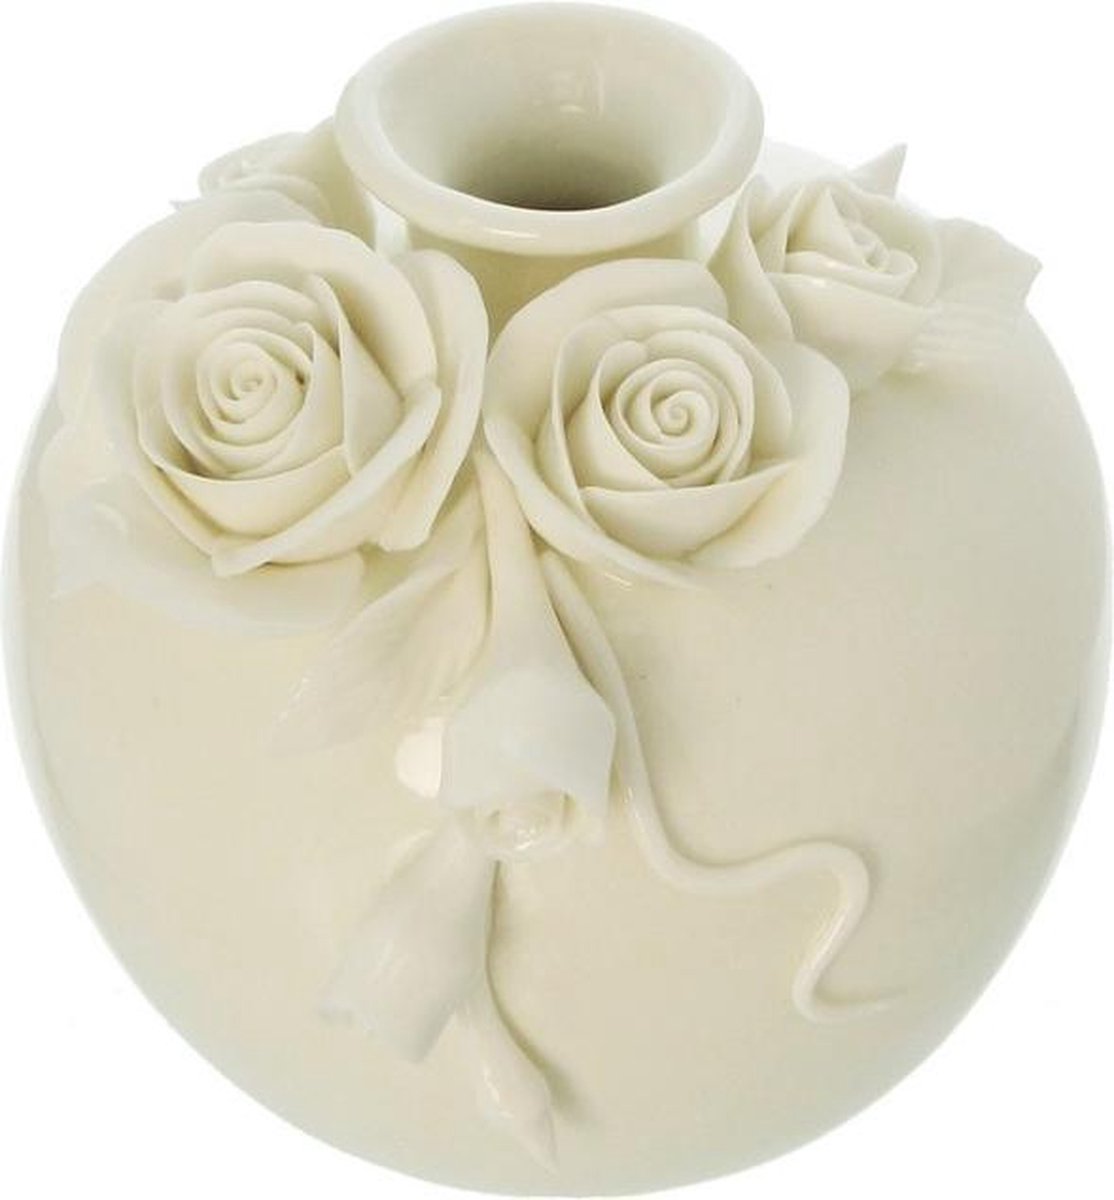 Bloem roos vaasje wit porselein thema bloemen | bol.com